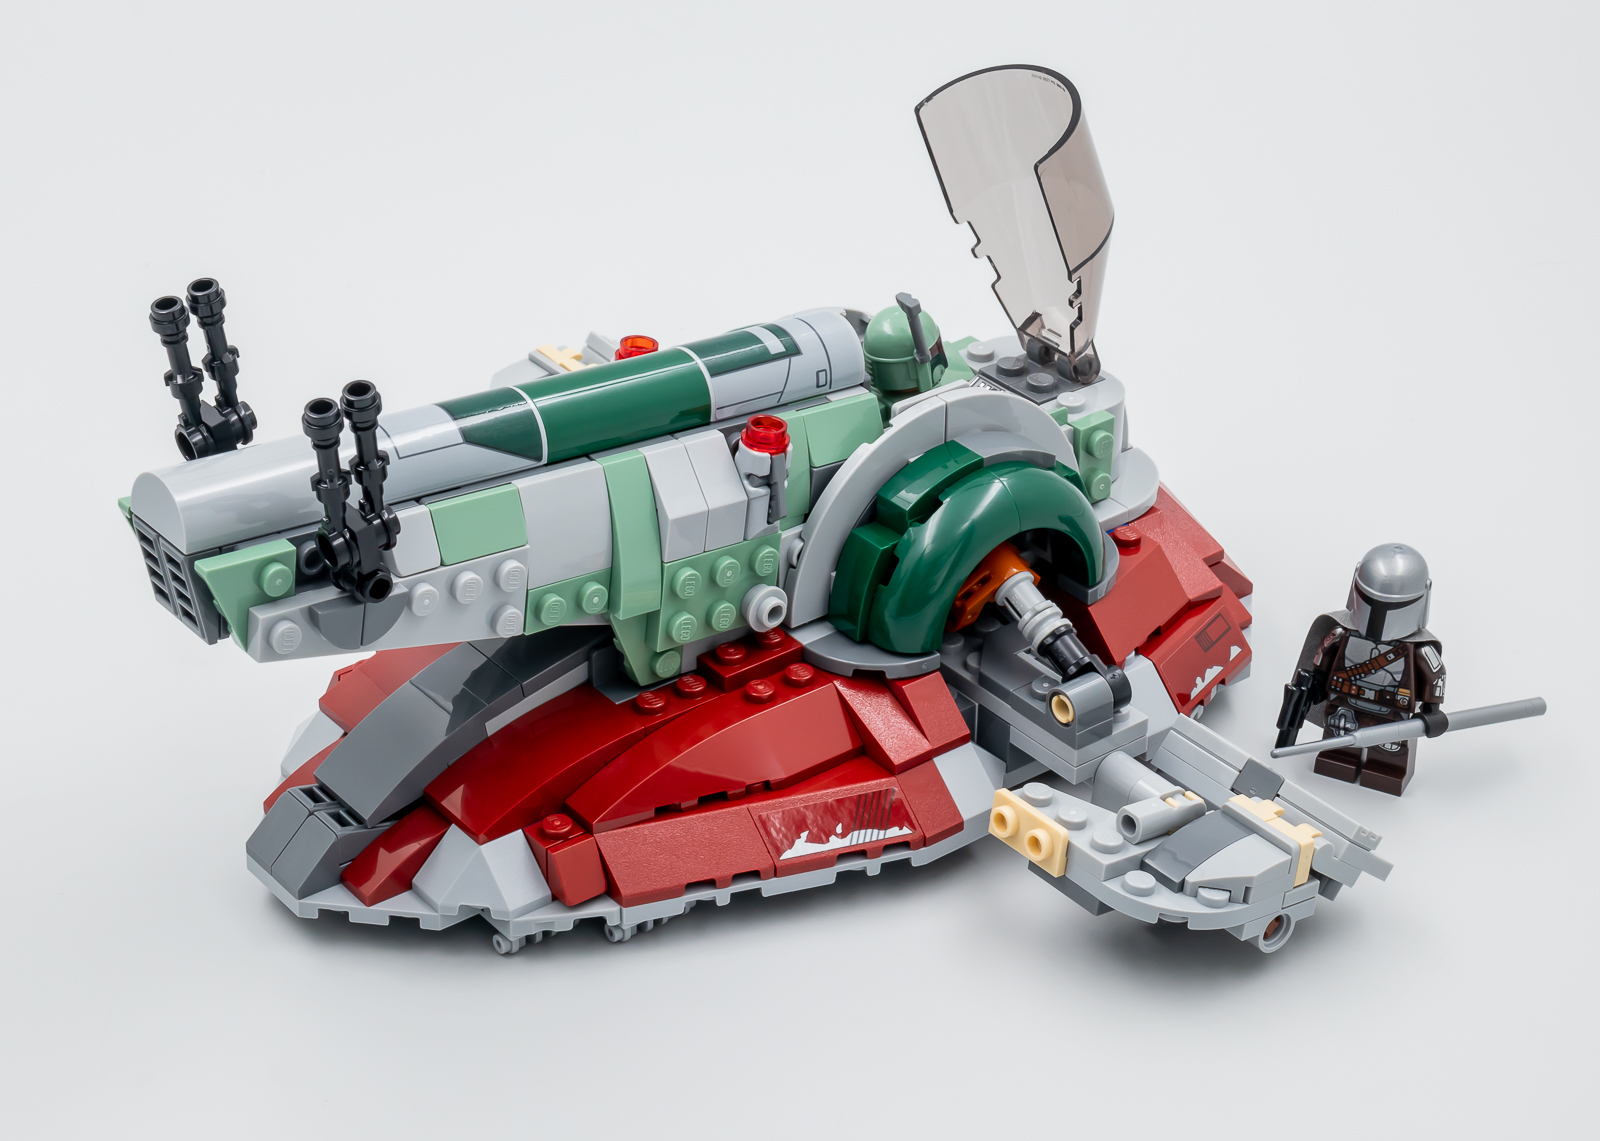 Le vaisseau de Boba Fett - LEGO® Star Wars 75312 - Super Briques